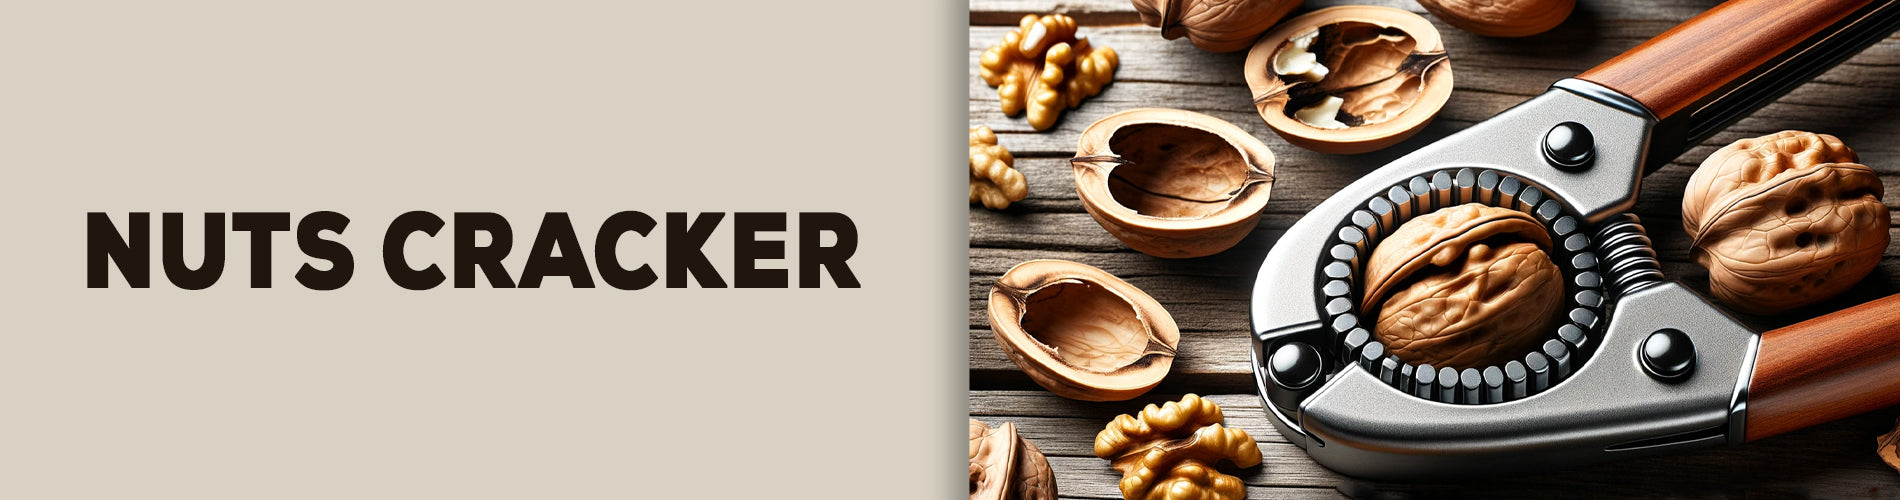 Nut cracker